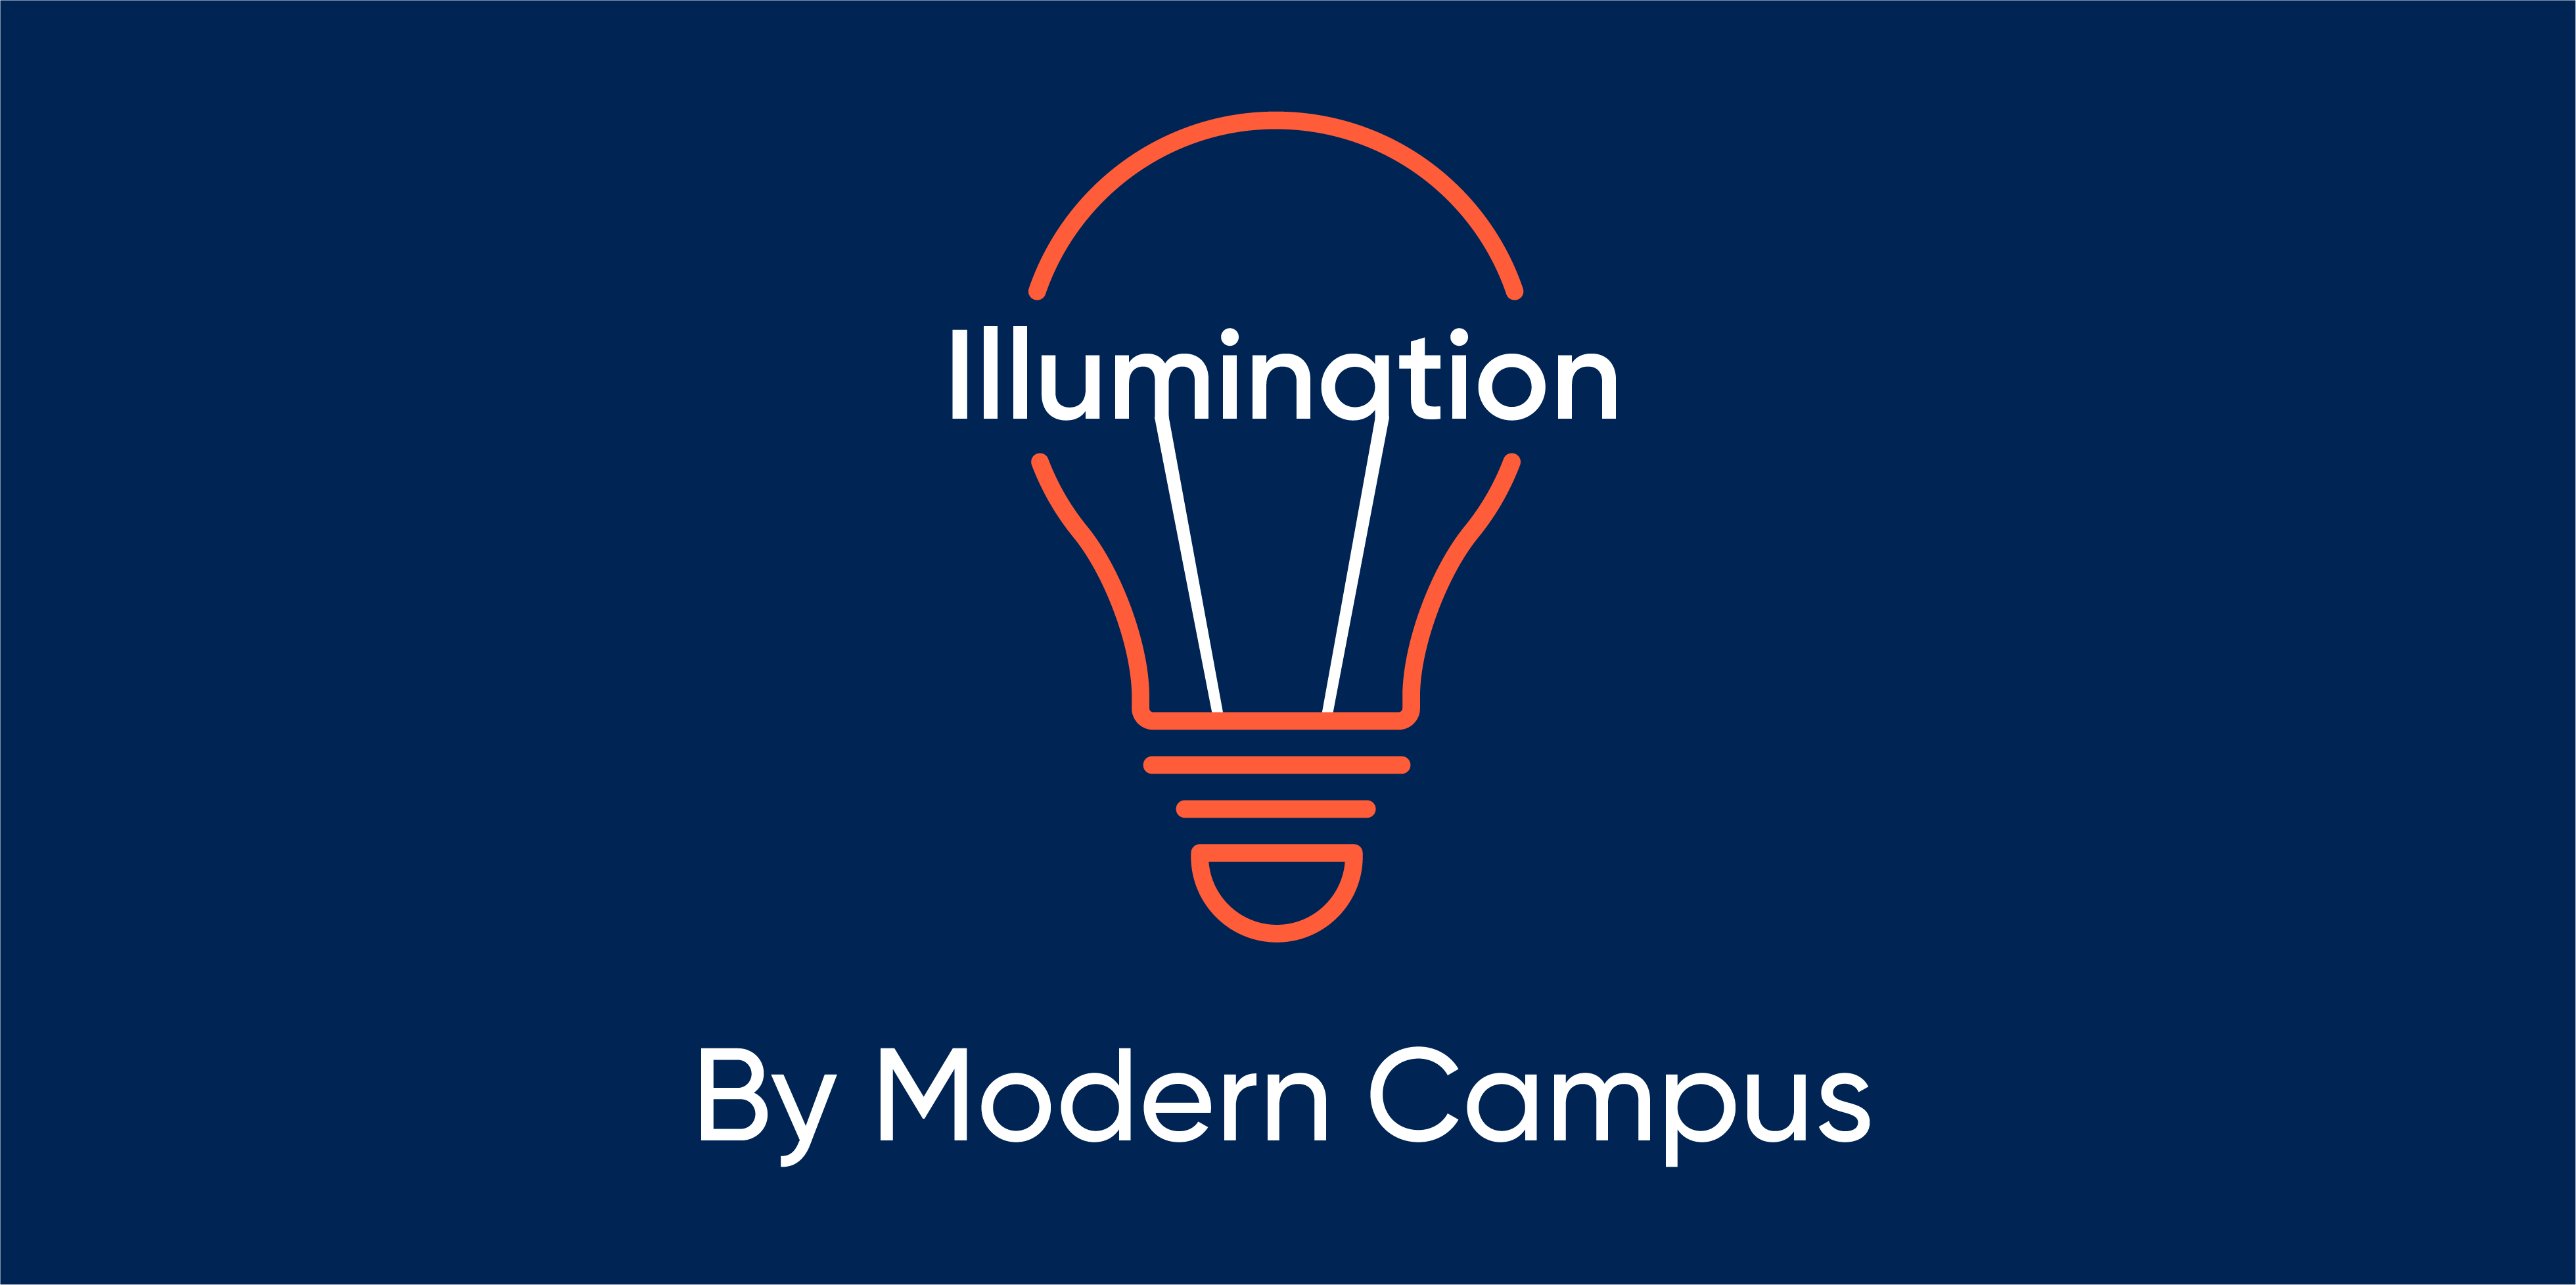 Episode 115: Illumination by Modern Campus